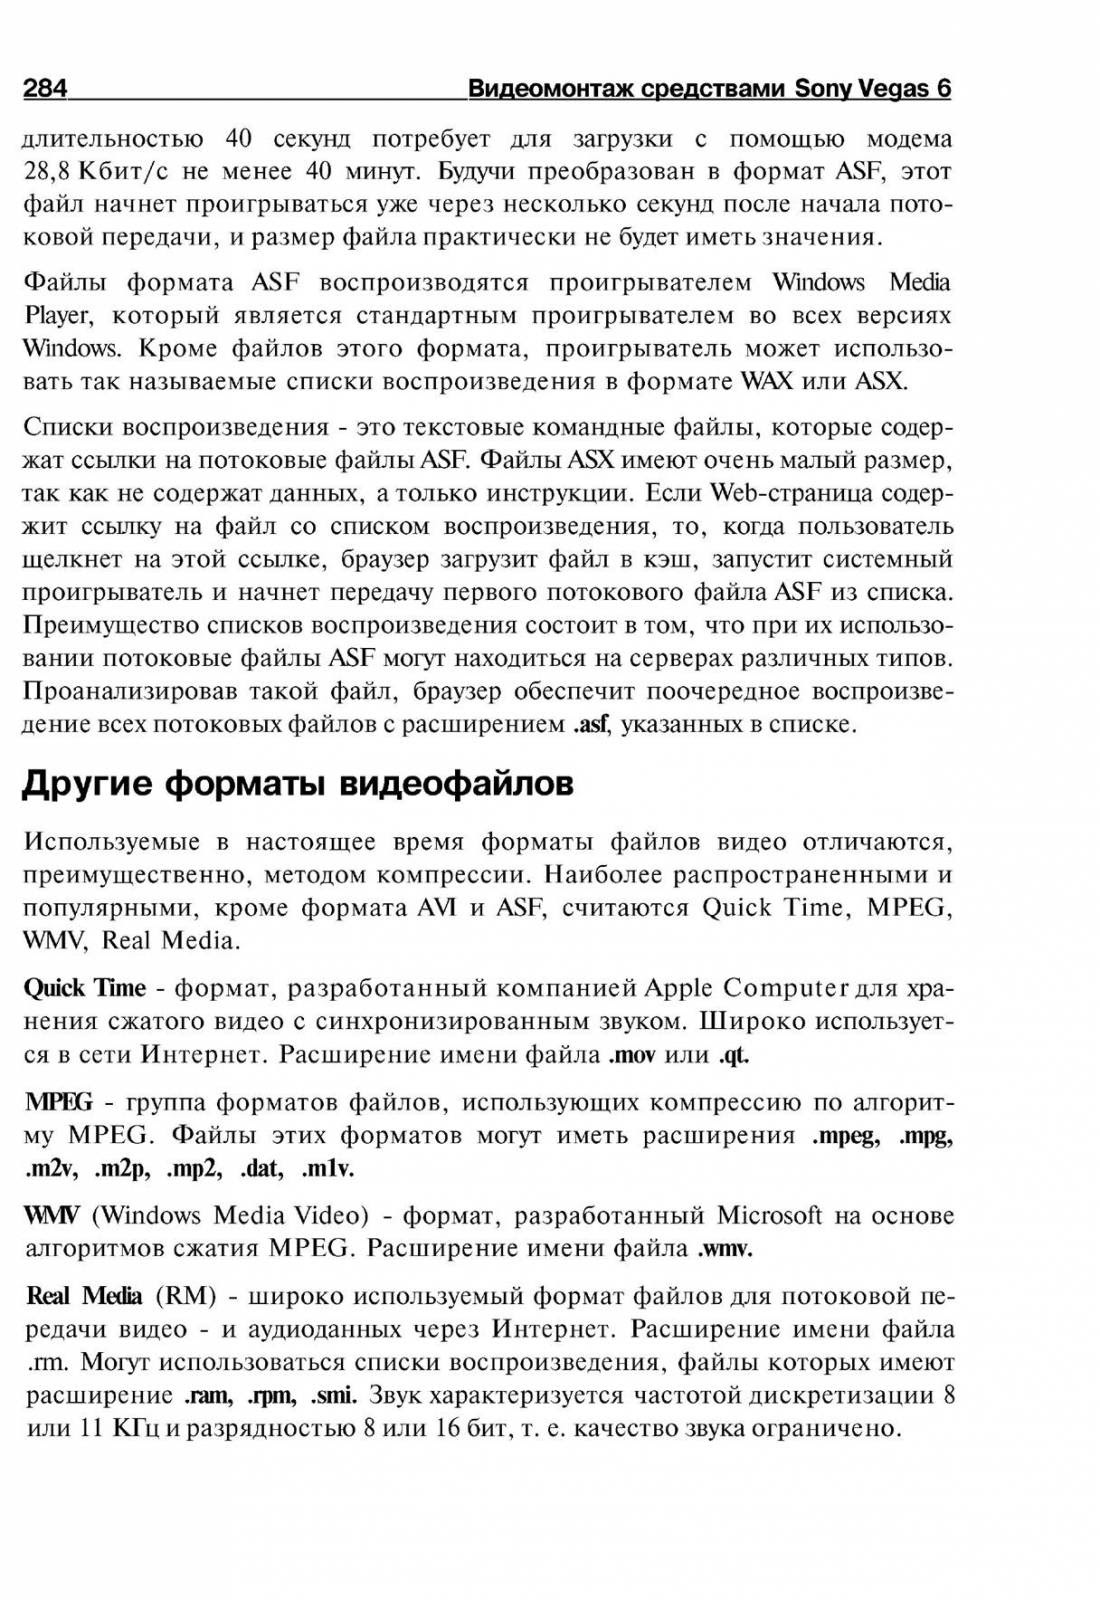 http://redaktori-uroki.3dn.ru/_ph/14/413225572.jpg